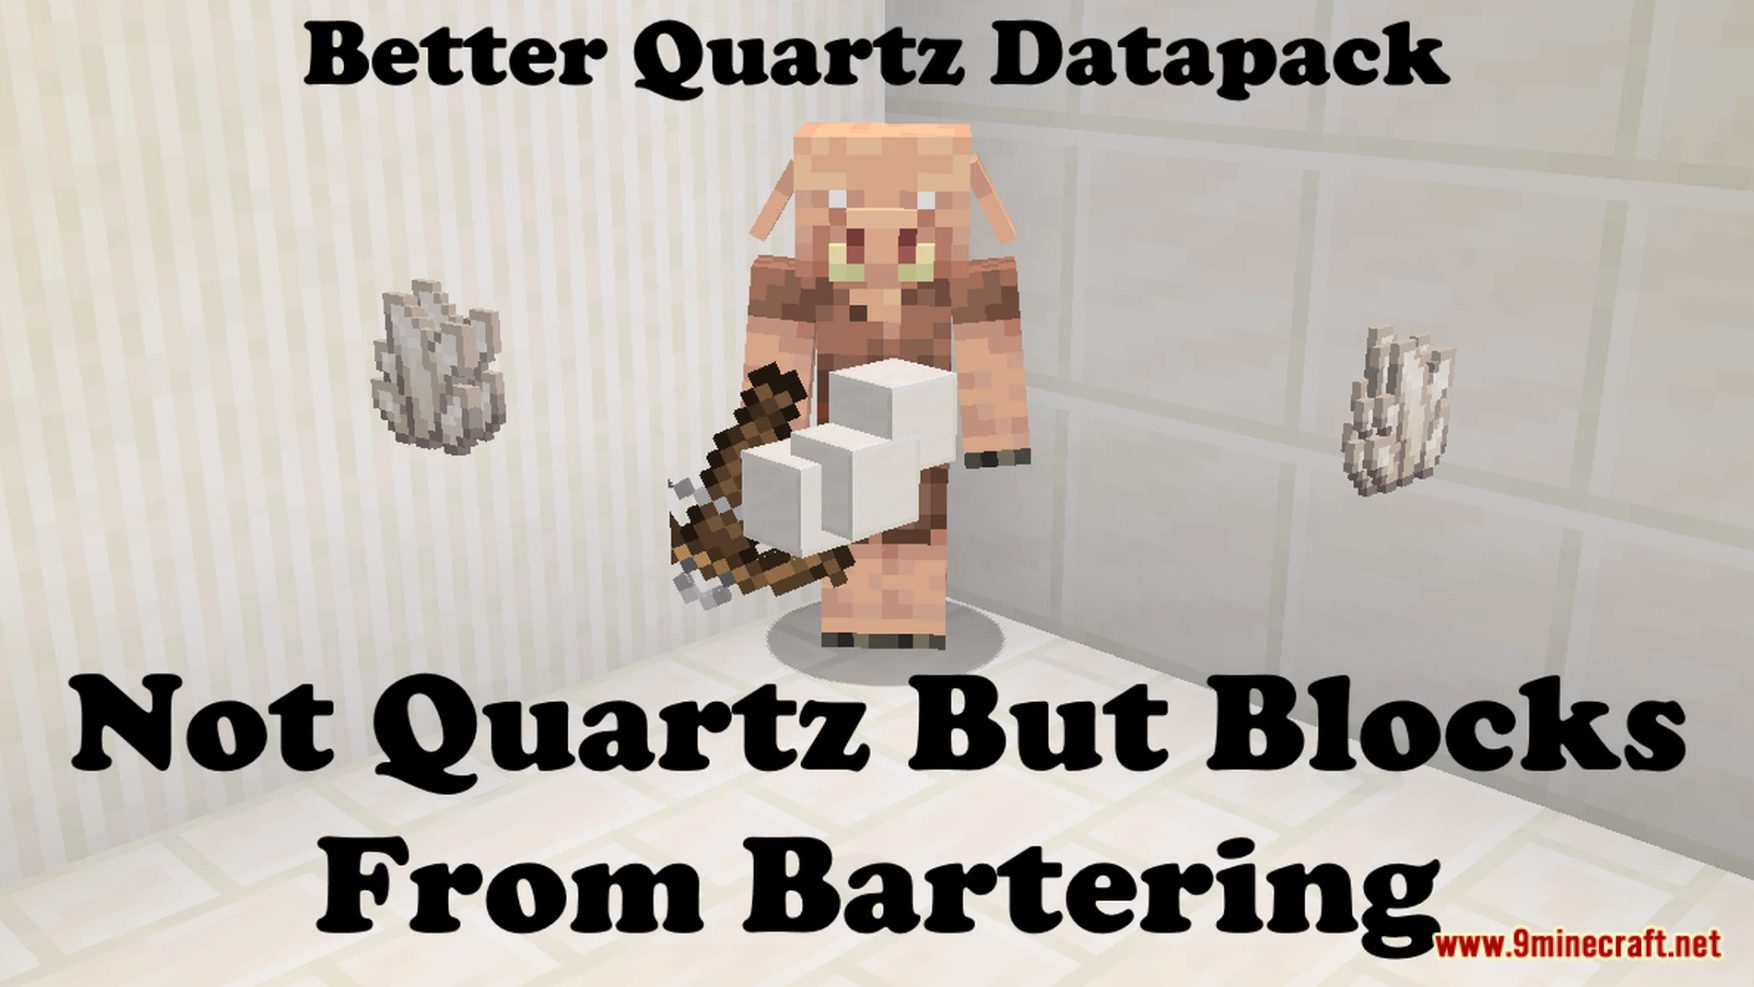 More Quartz Drop Data Pack (1.19.4, 1.19.2) - Better Quartz! 8